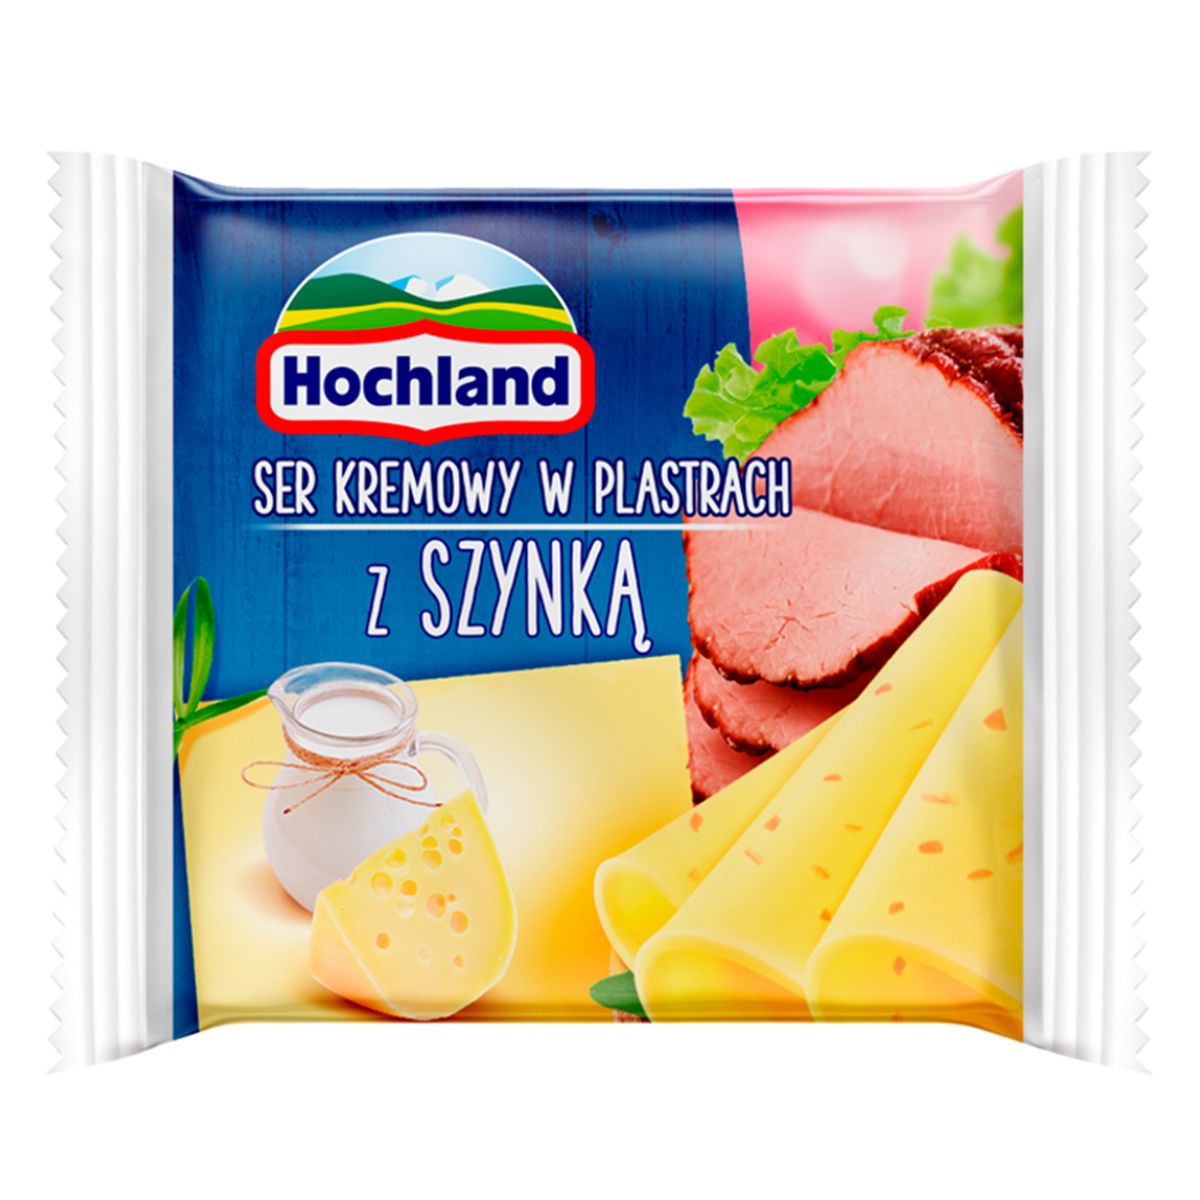 Pakowane sery Hochland z plasterkami szynki.
Product Name: Hochland - Ham & Cheese - 130g